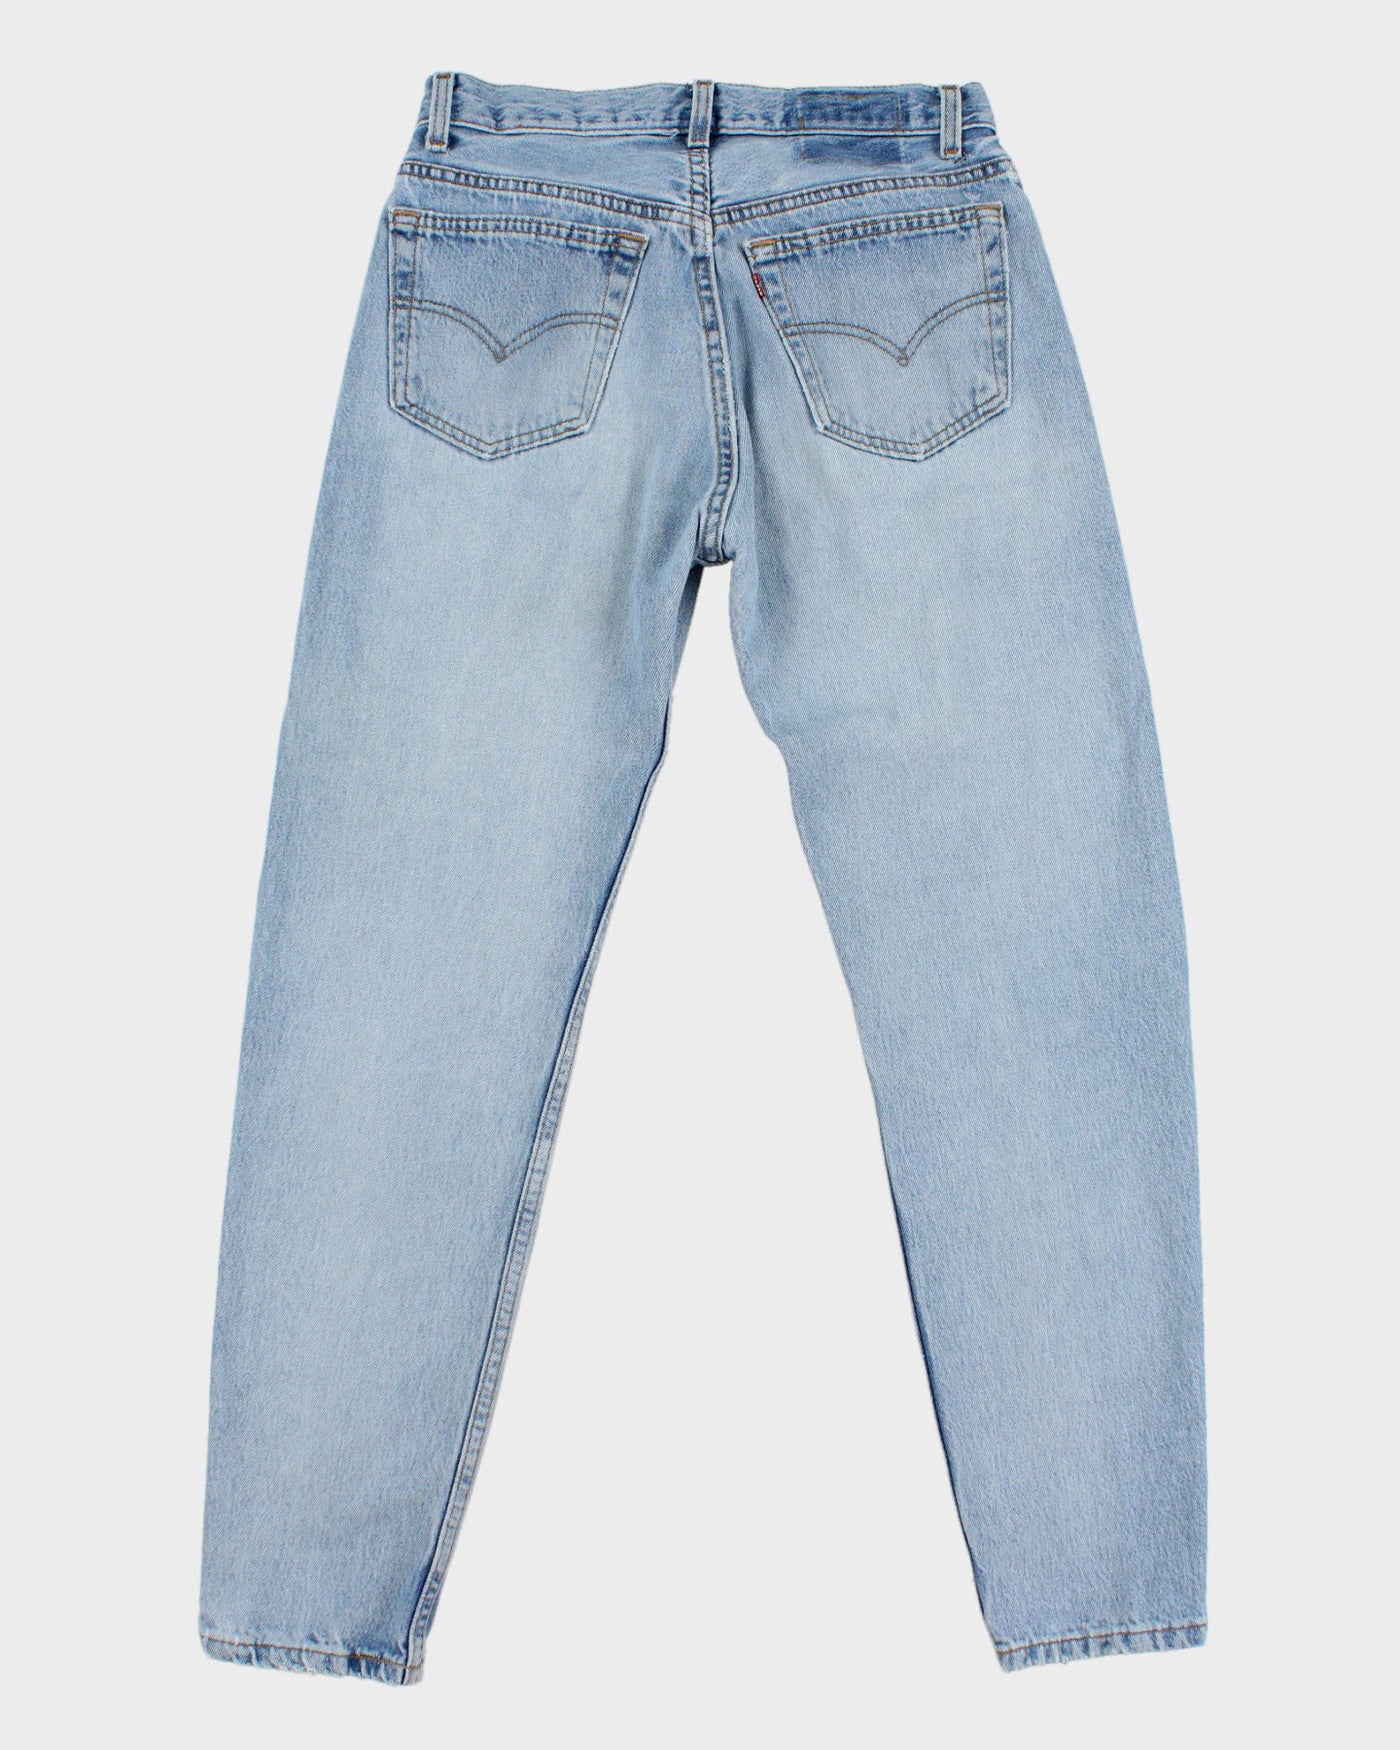 Vintage 90s Levi's Lightwash Denim 501 Jeans - W26 L28